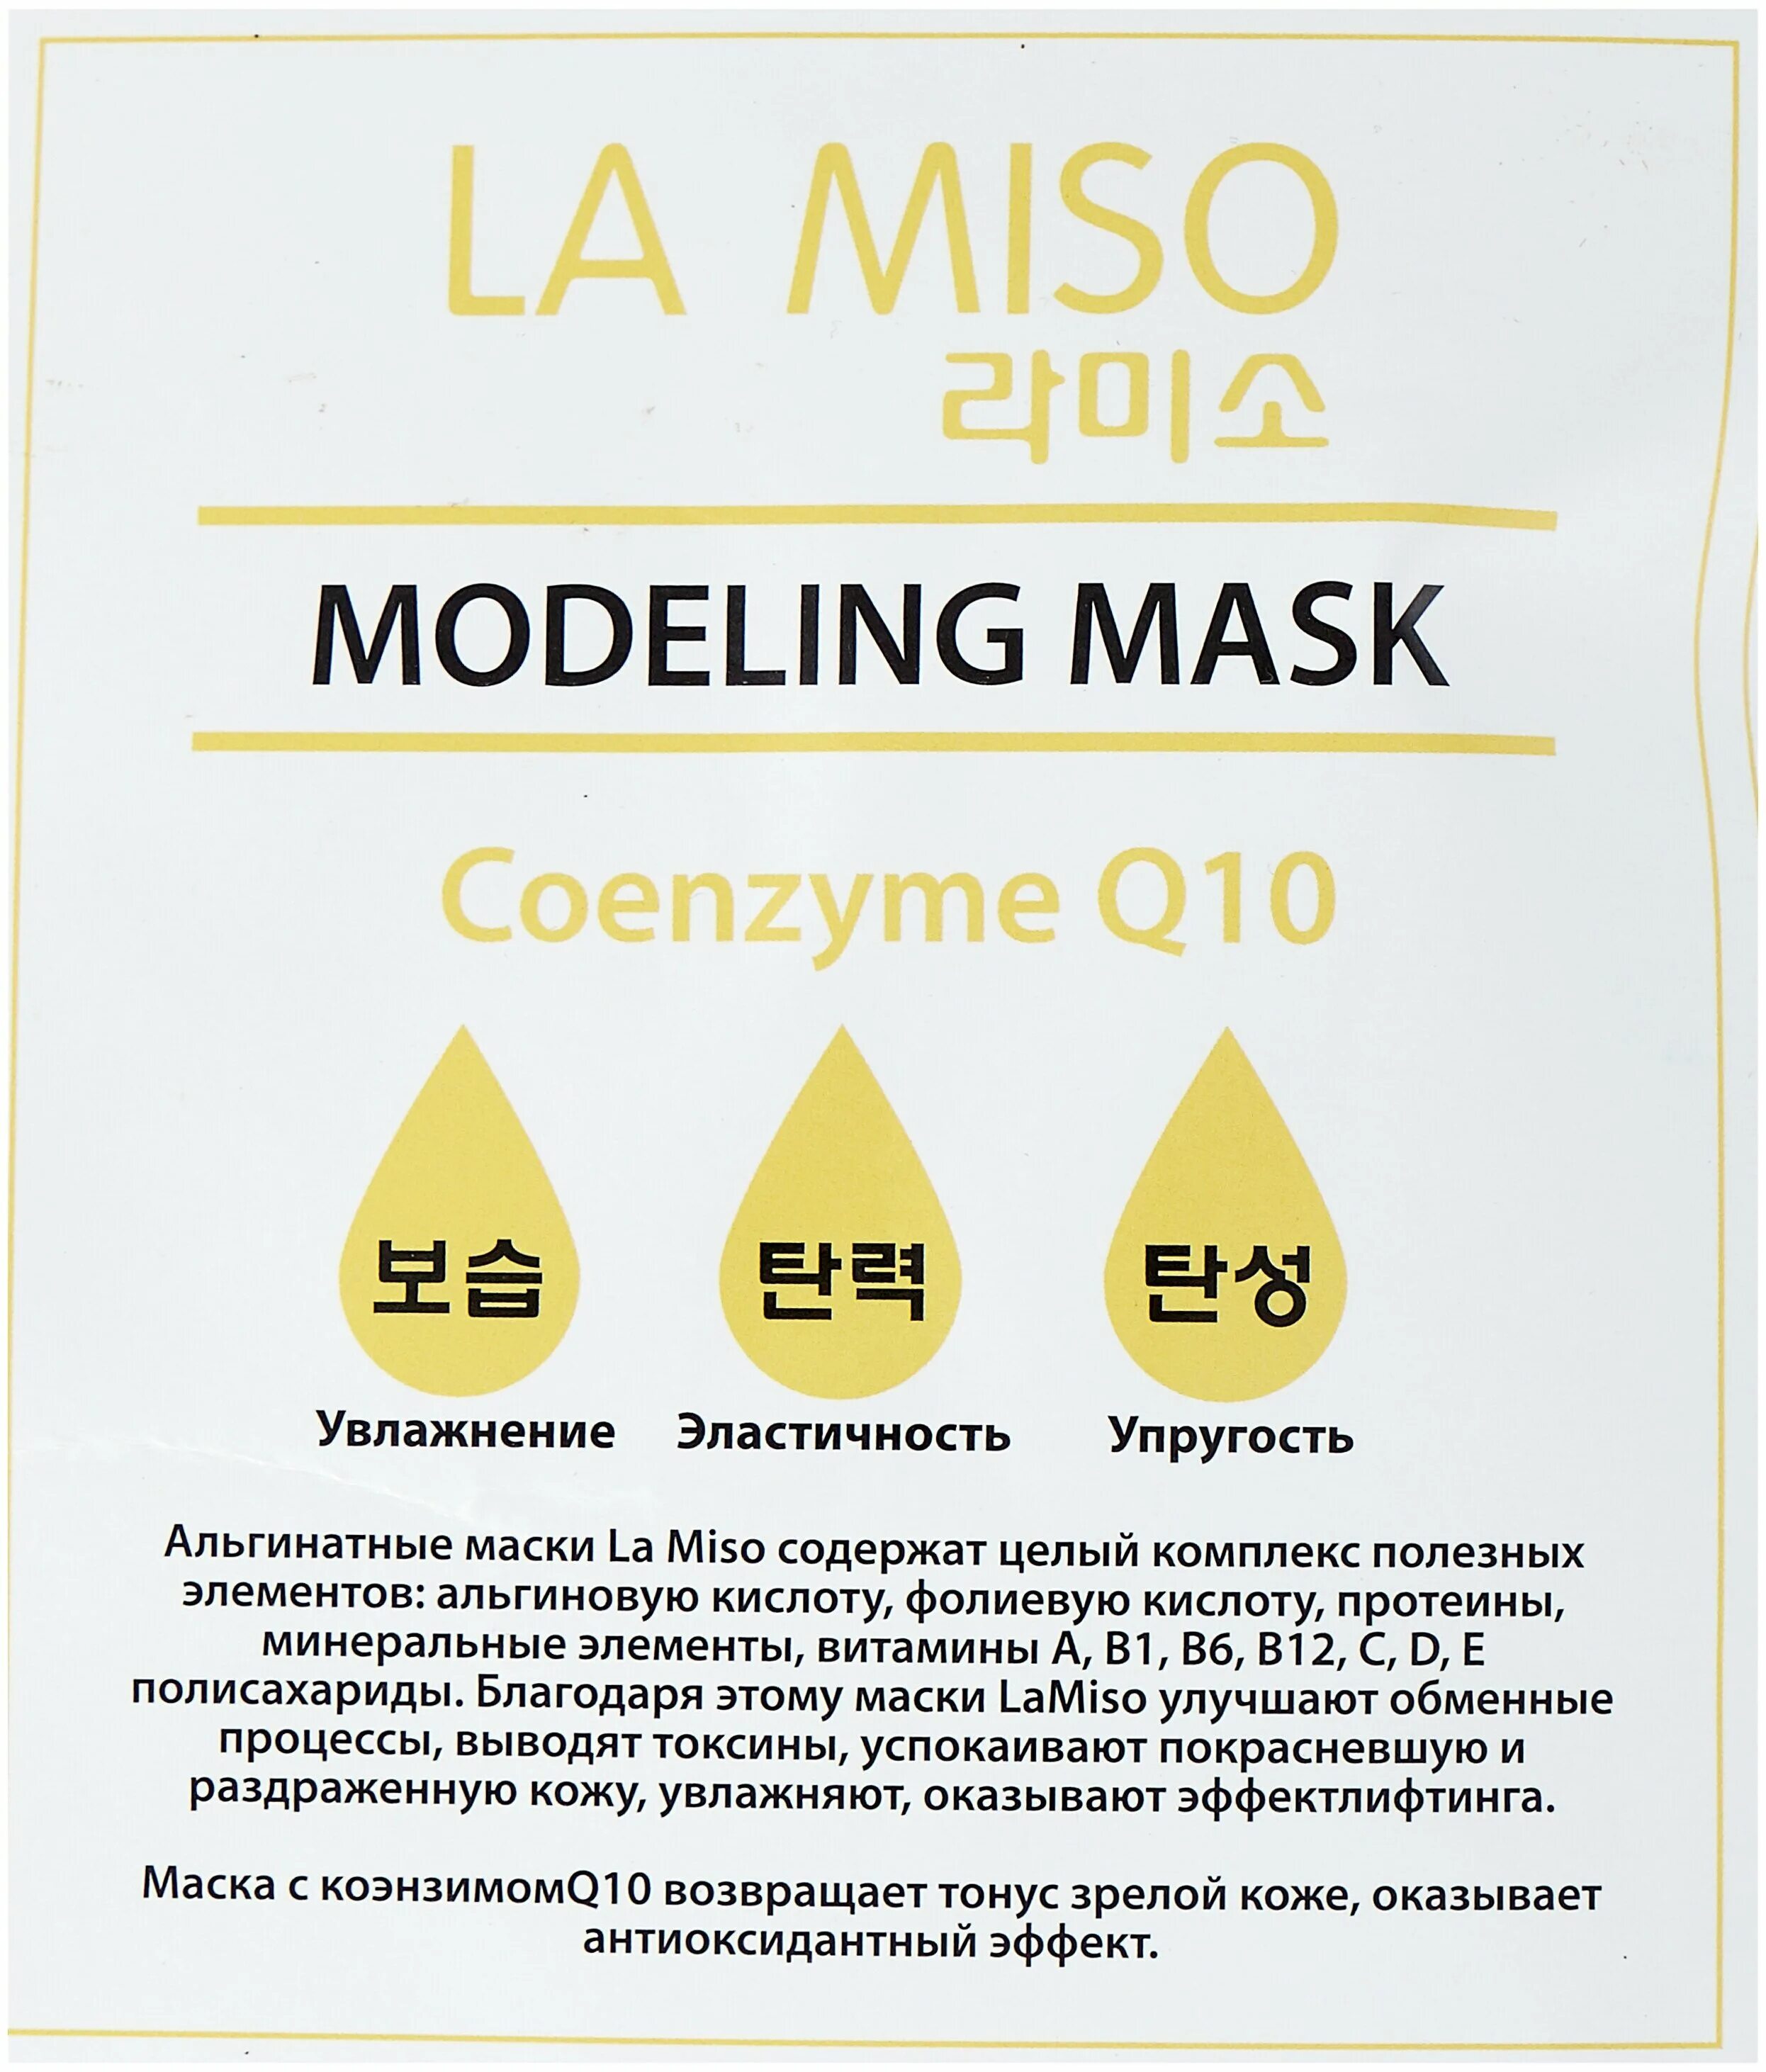 Альгинатная маска miso. Ла мисо альгинатная маска. La Miso альгинатная маска. Маска для лица la Miso альгинатная с коэнзимом q10. Маска альгинатная витаминизирующая la Miso Vitamin Modeling Mask, 1000 гр.